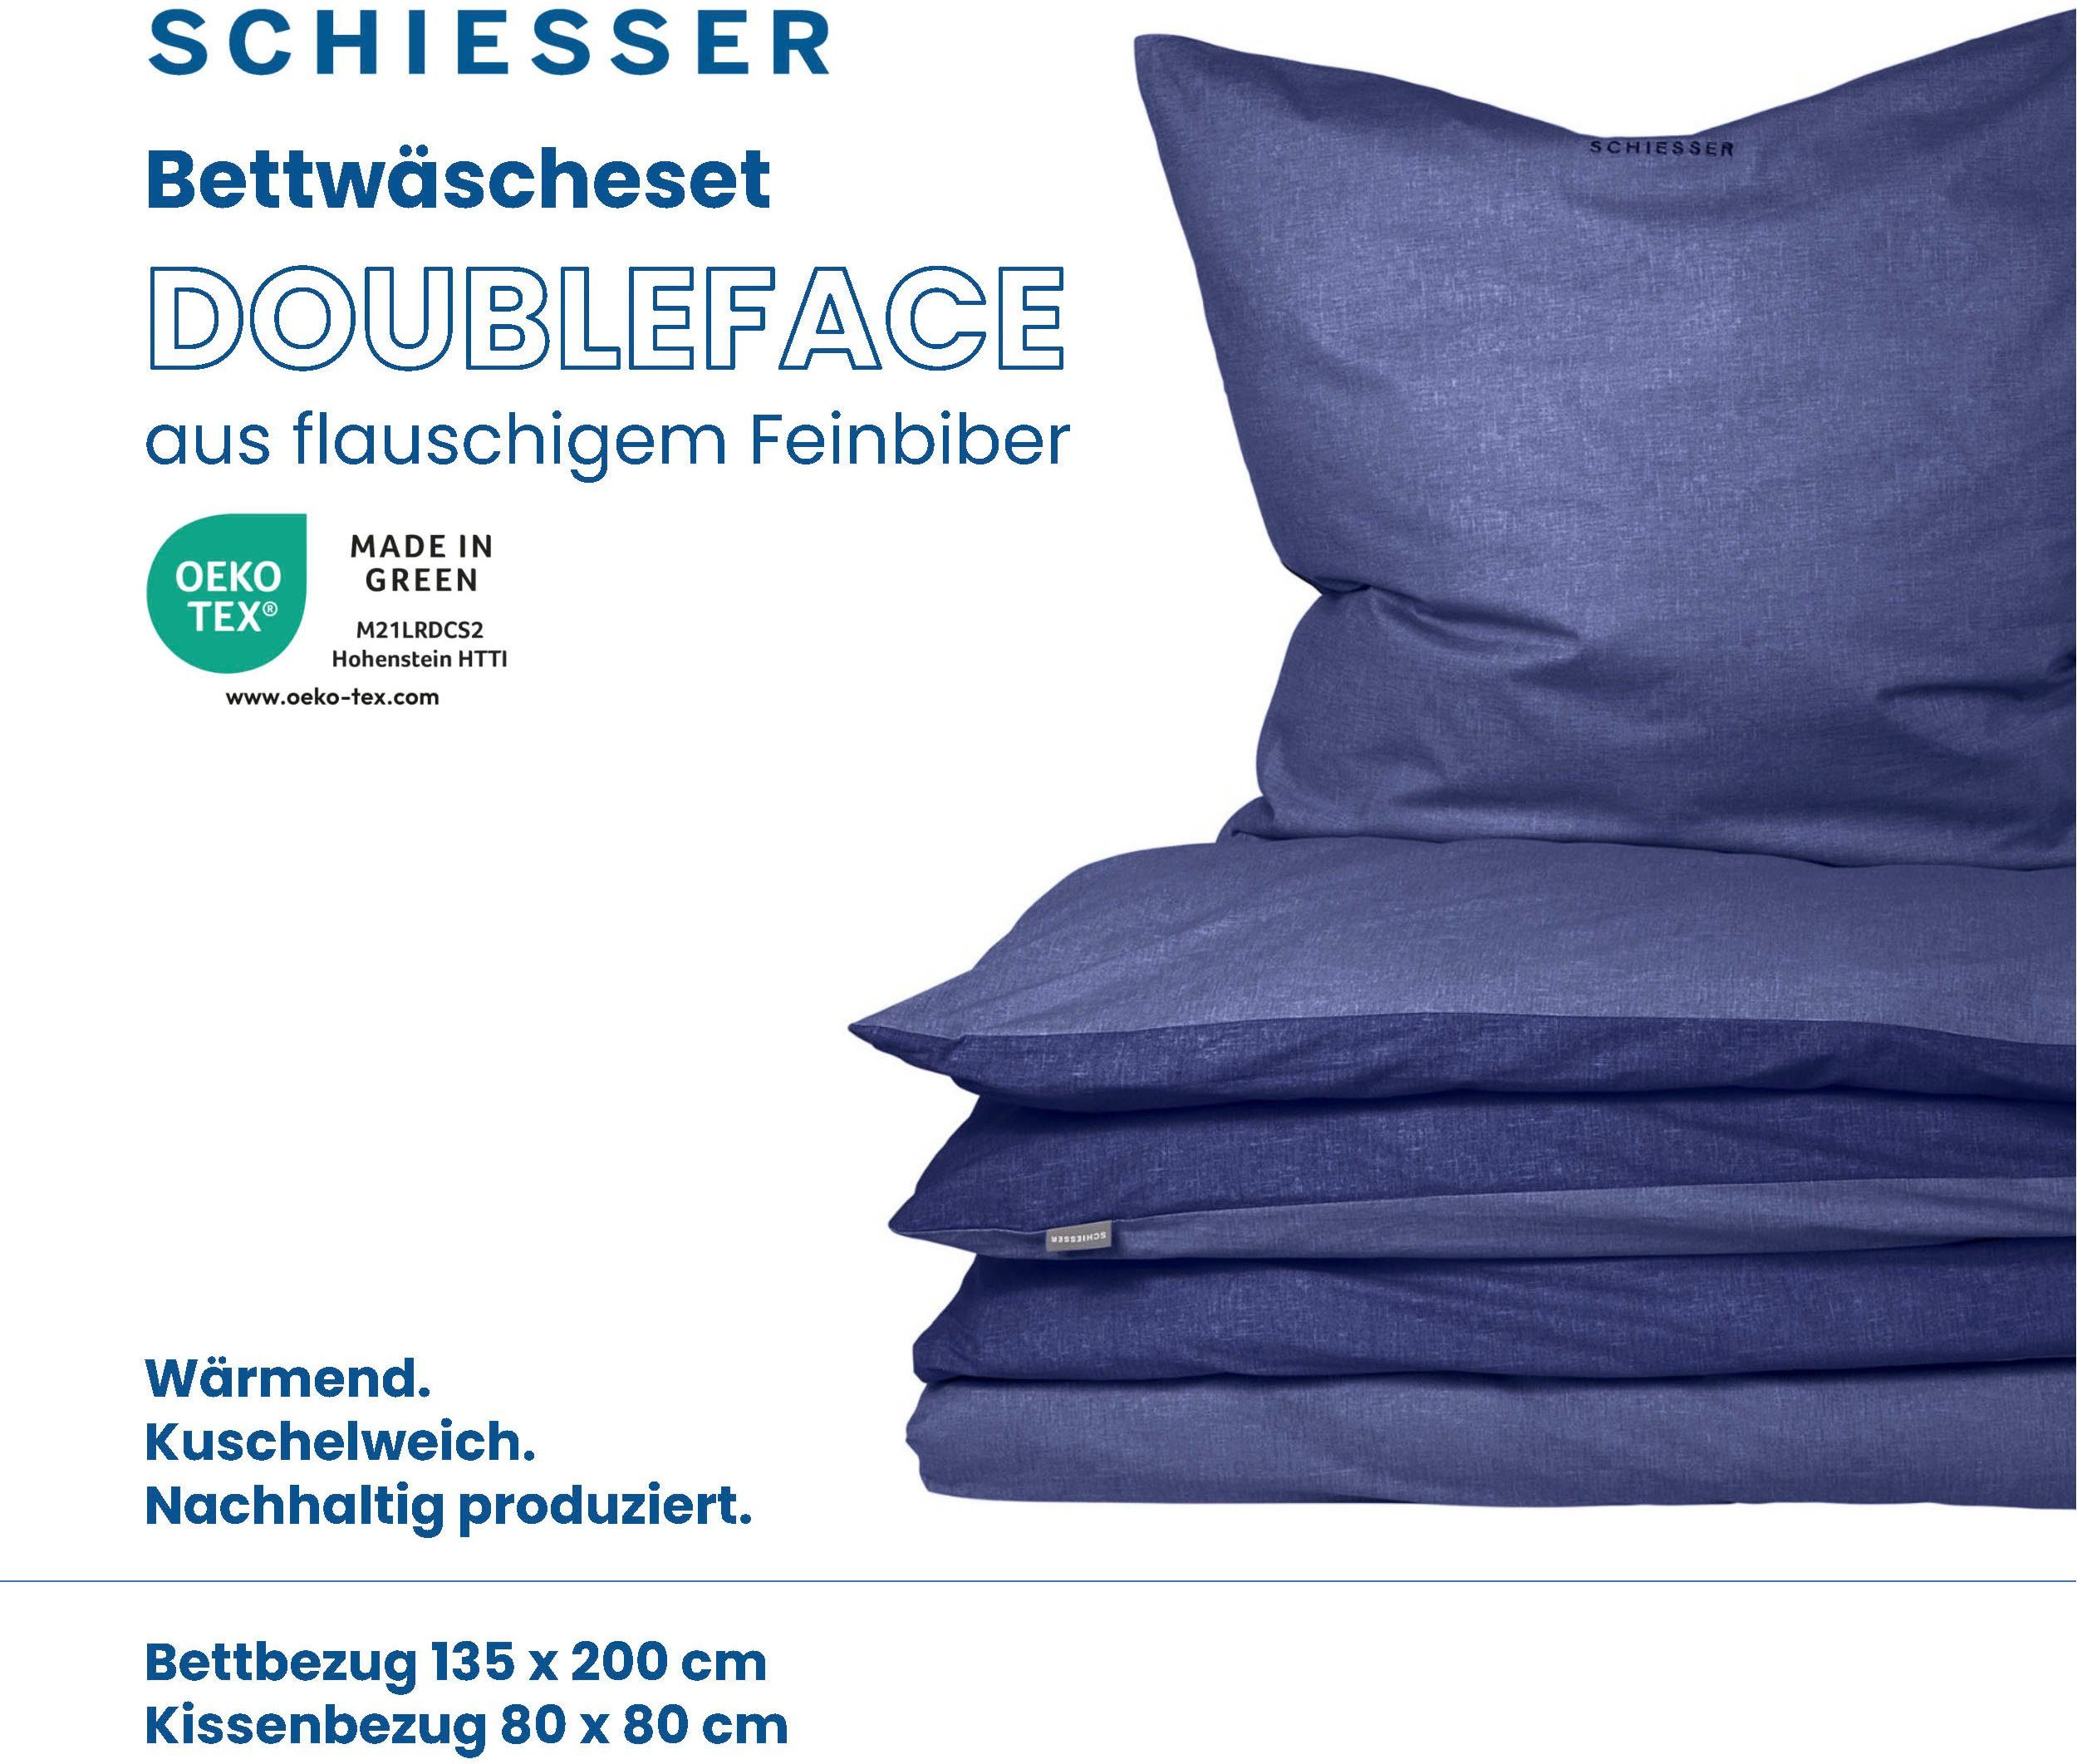 Reißverschluss Doubleface, Blau teilig, Wendebettwäsche Dunkelblau Logostickerei Feinbiber, mit und Schiesser, 2 und